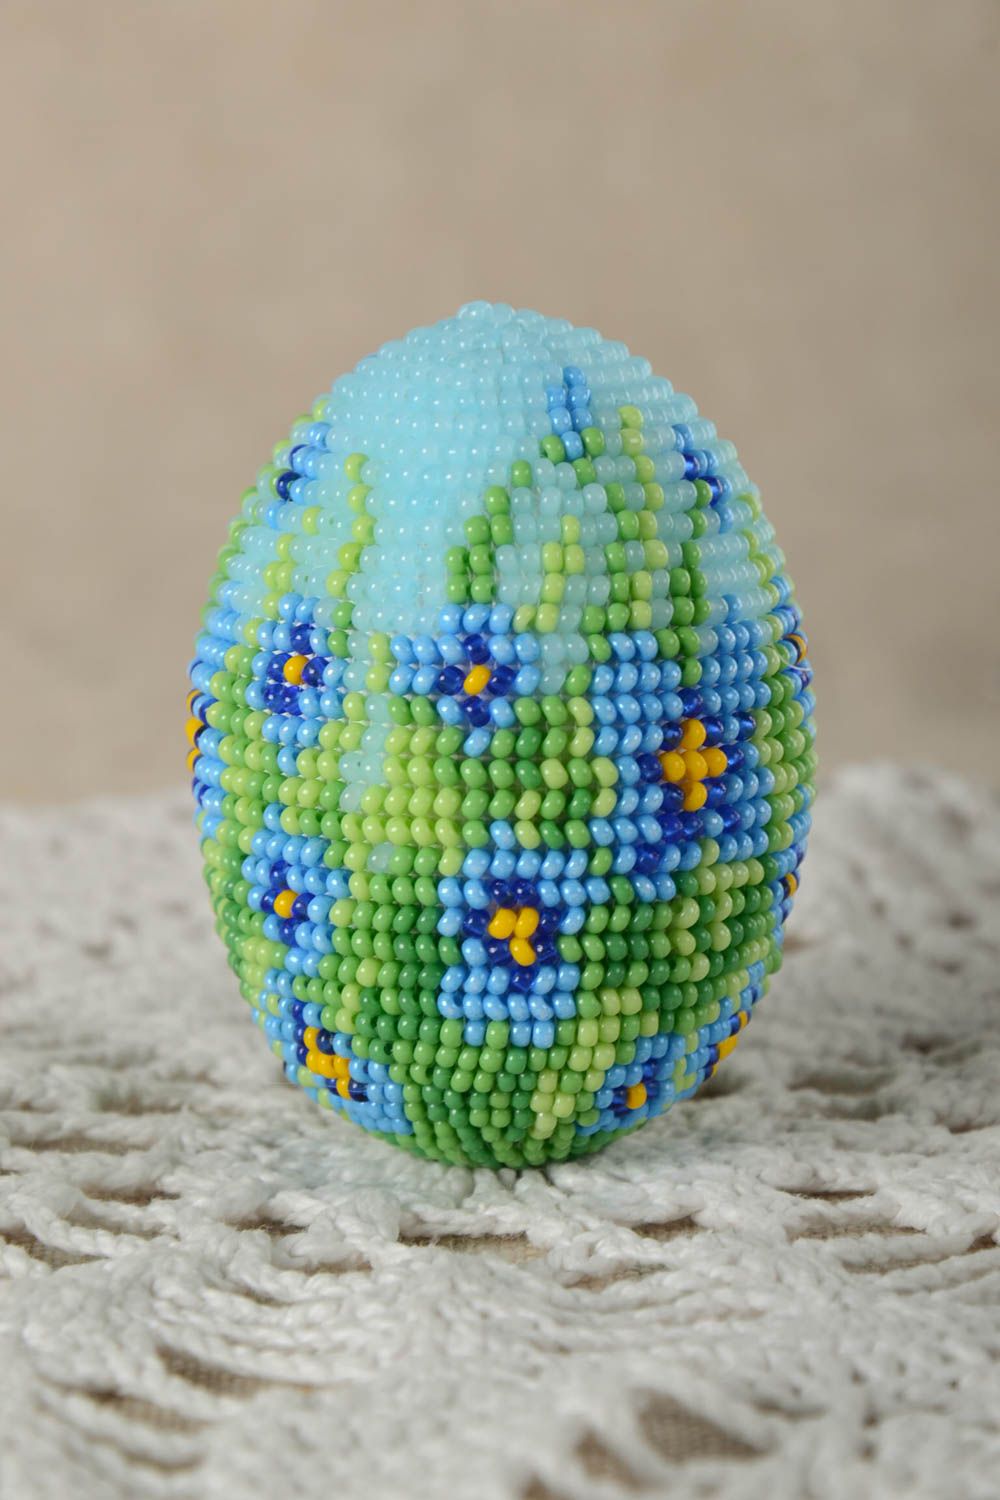 Яйцо из бисера ручной работы декоративный элемент предмет интерьера голубое  фото 1